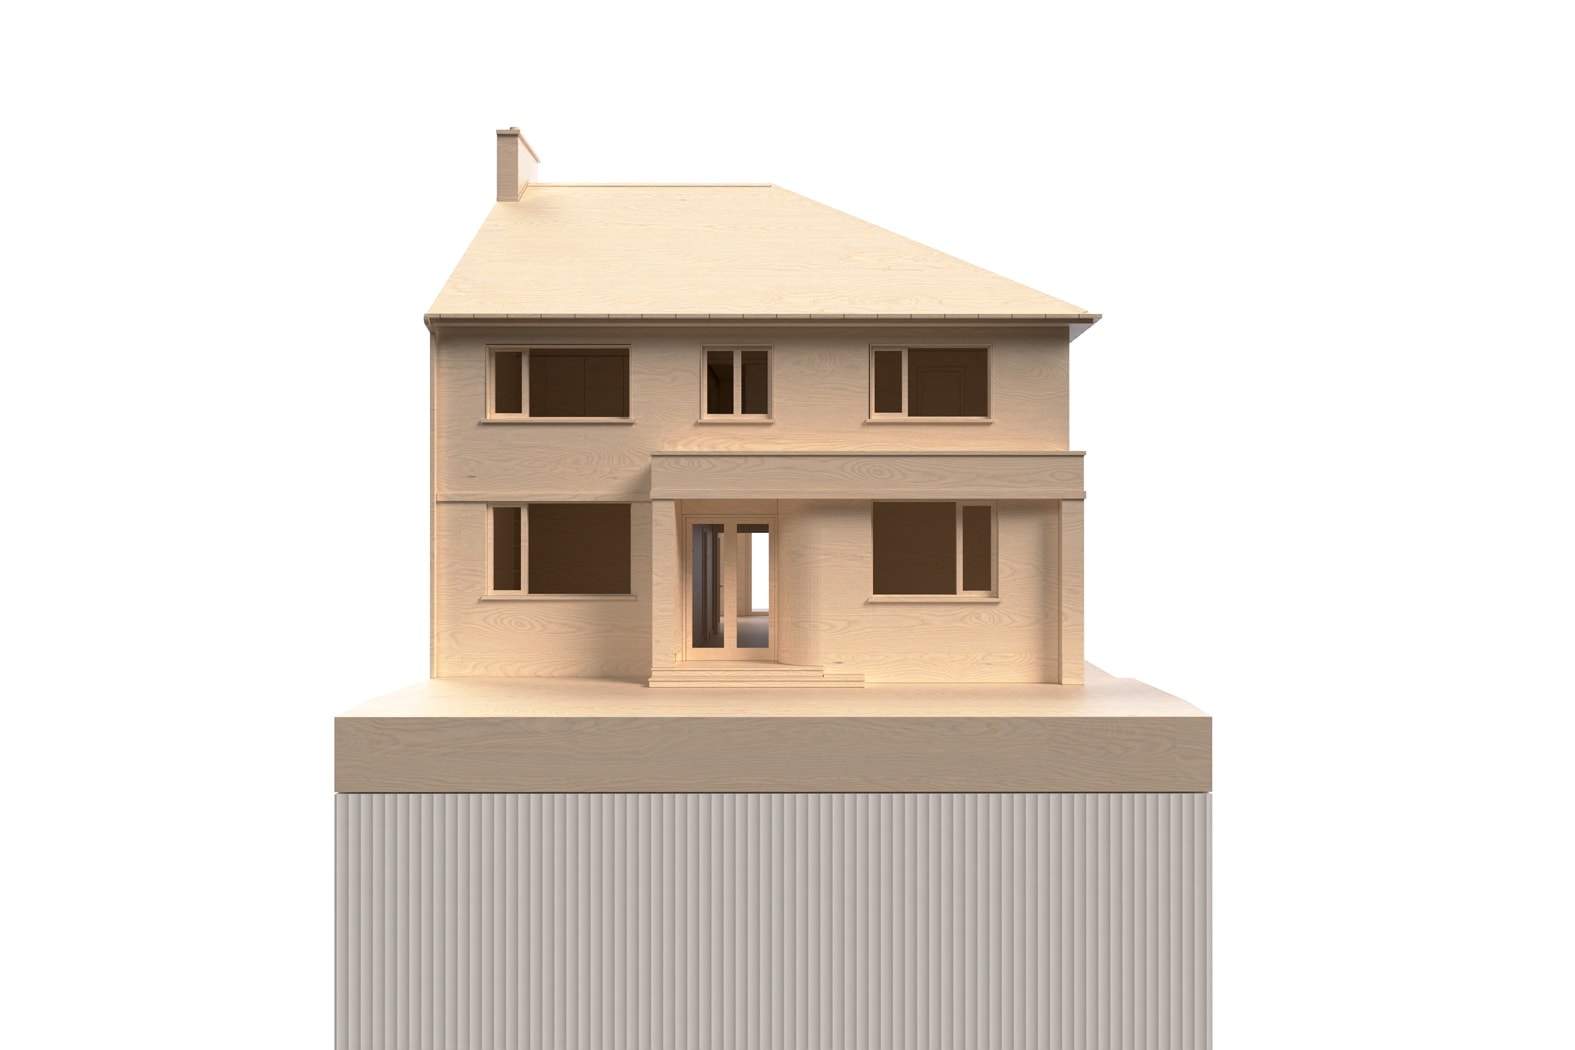 Digital model image showing the front elevation